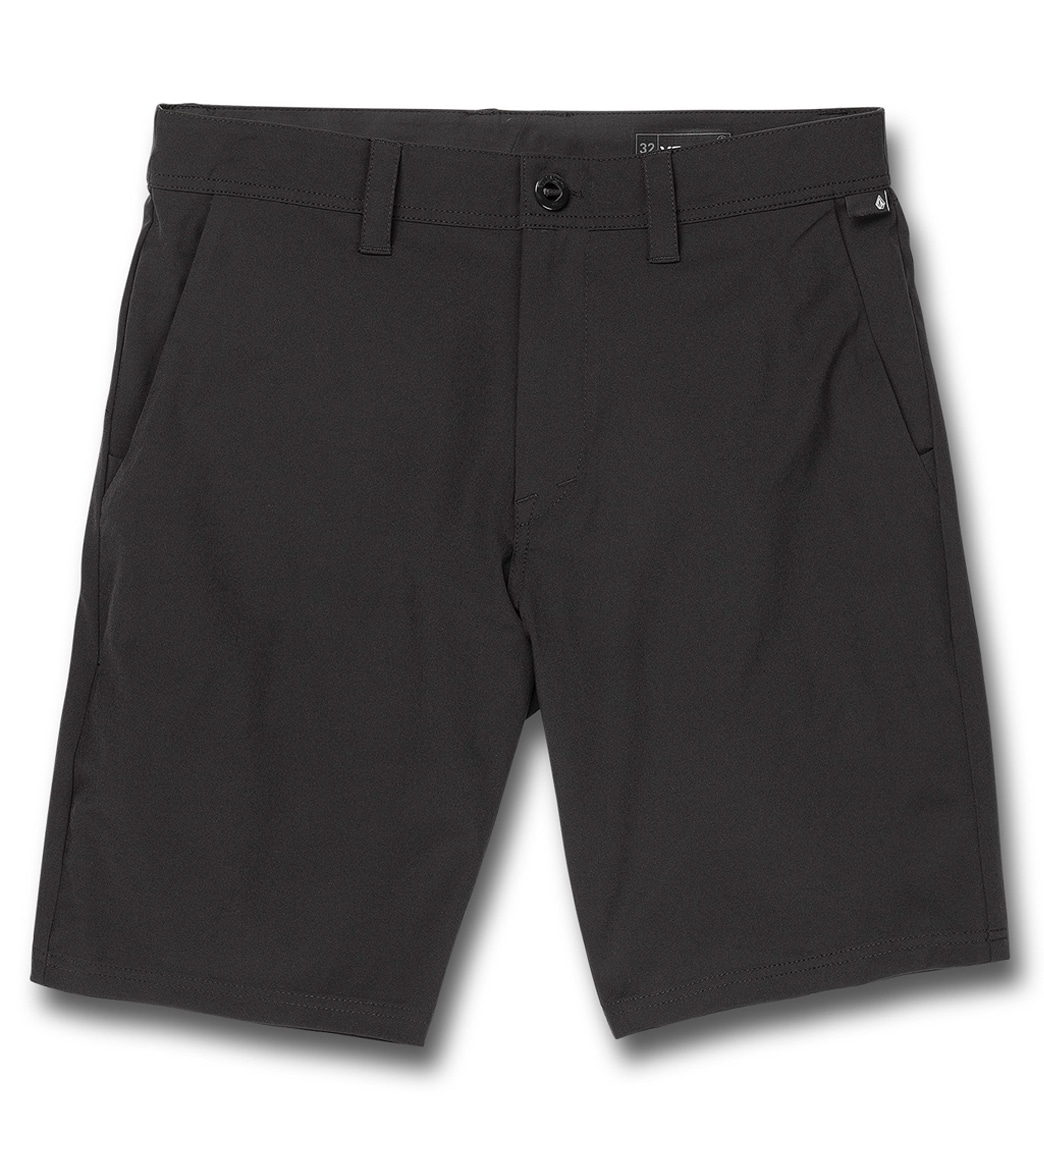 Volcom Men's Frickin Cross Shred 20 Shorts - Black 31 - Swimoutlet.com